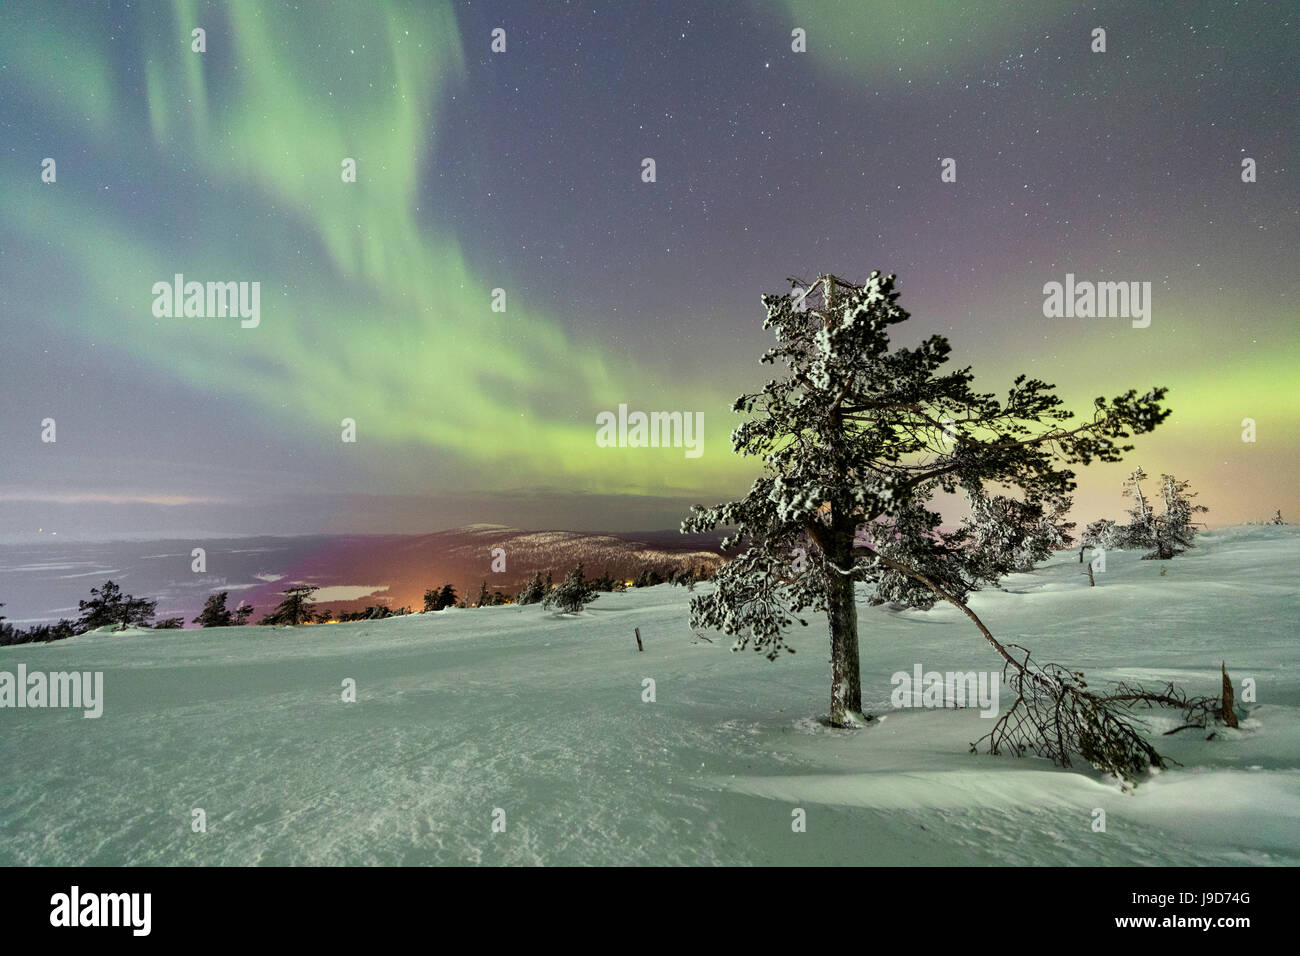 Nordlichter (Aurora Borealis) und Sternenhimmel auf die verschneite  Landschaft und den gefrorenen Bäumen, Levi, Sirkka, Kittilä, Finnland  Stockfotografie - Alamy